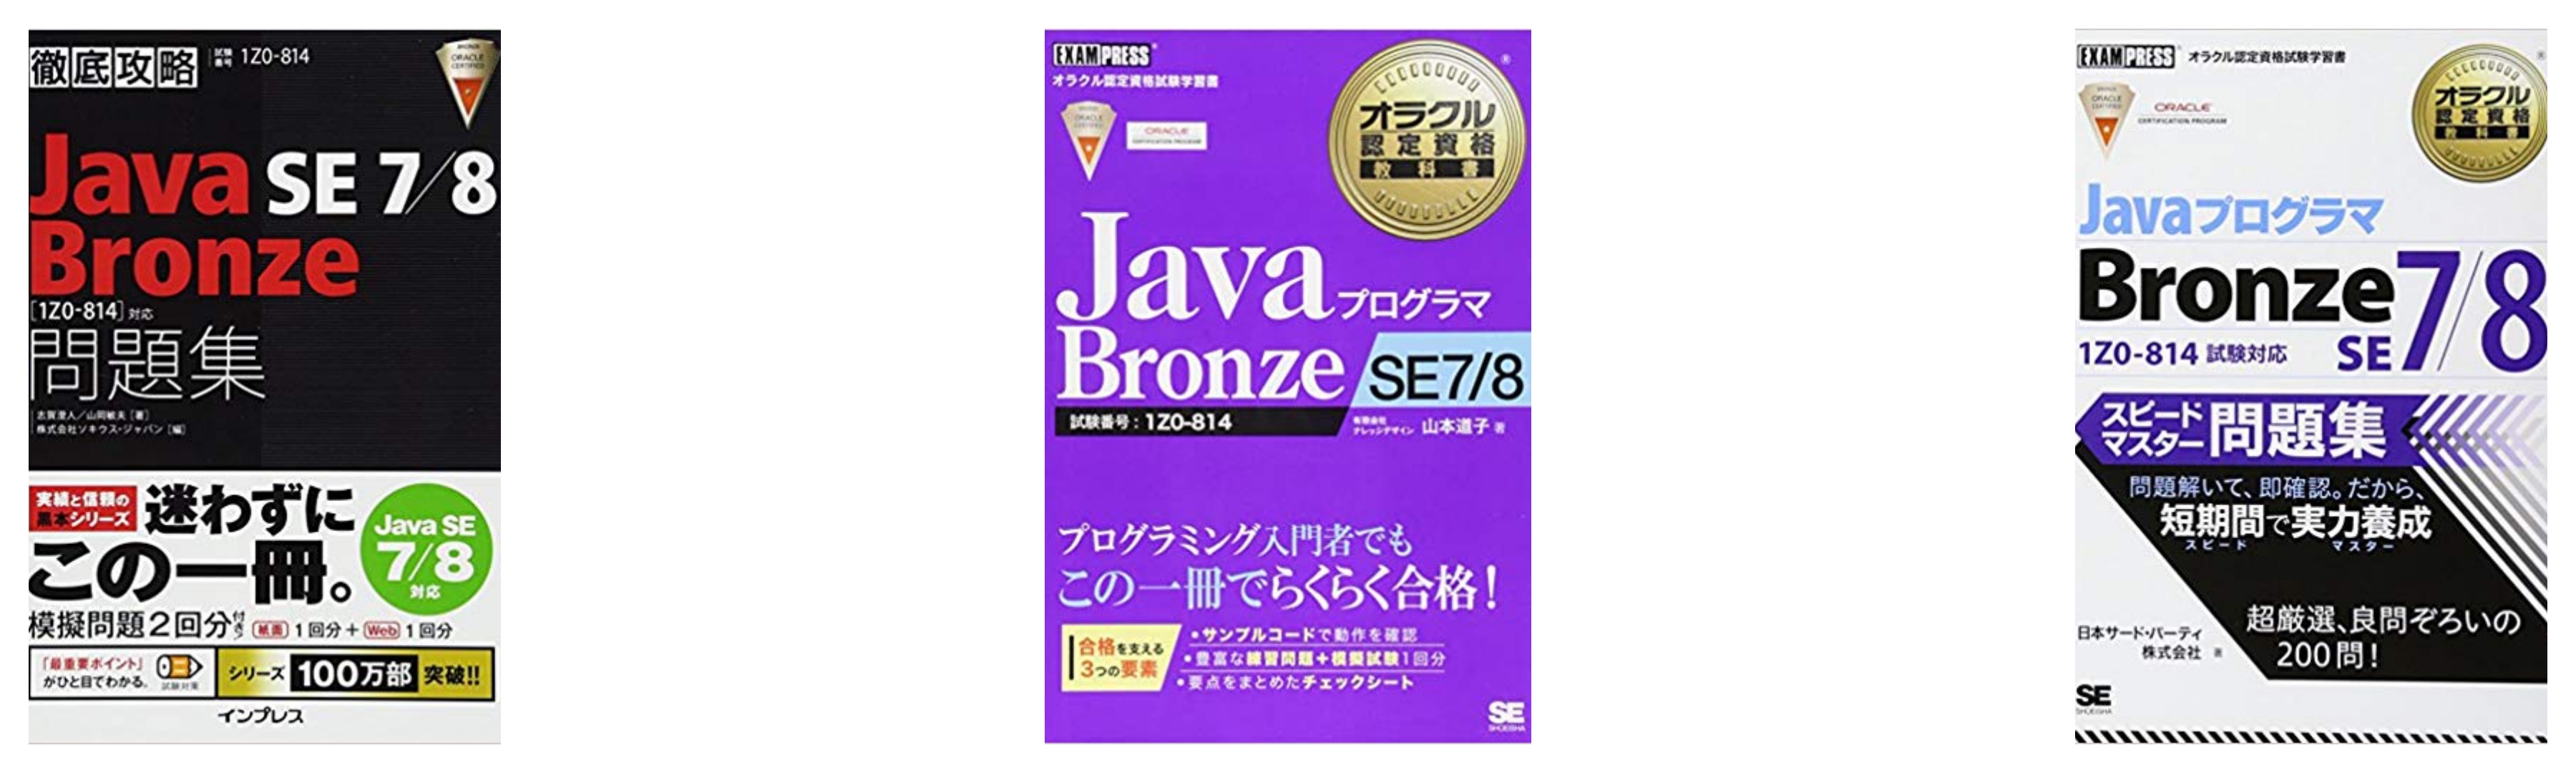 合格 オラクル認定java資格 Bronzeレベルのおすすめ参考書 テキスト 独学勉強法 対策 資格検定hacker